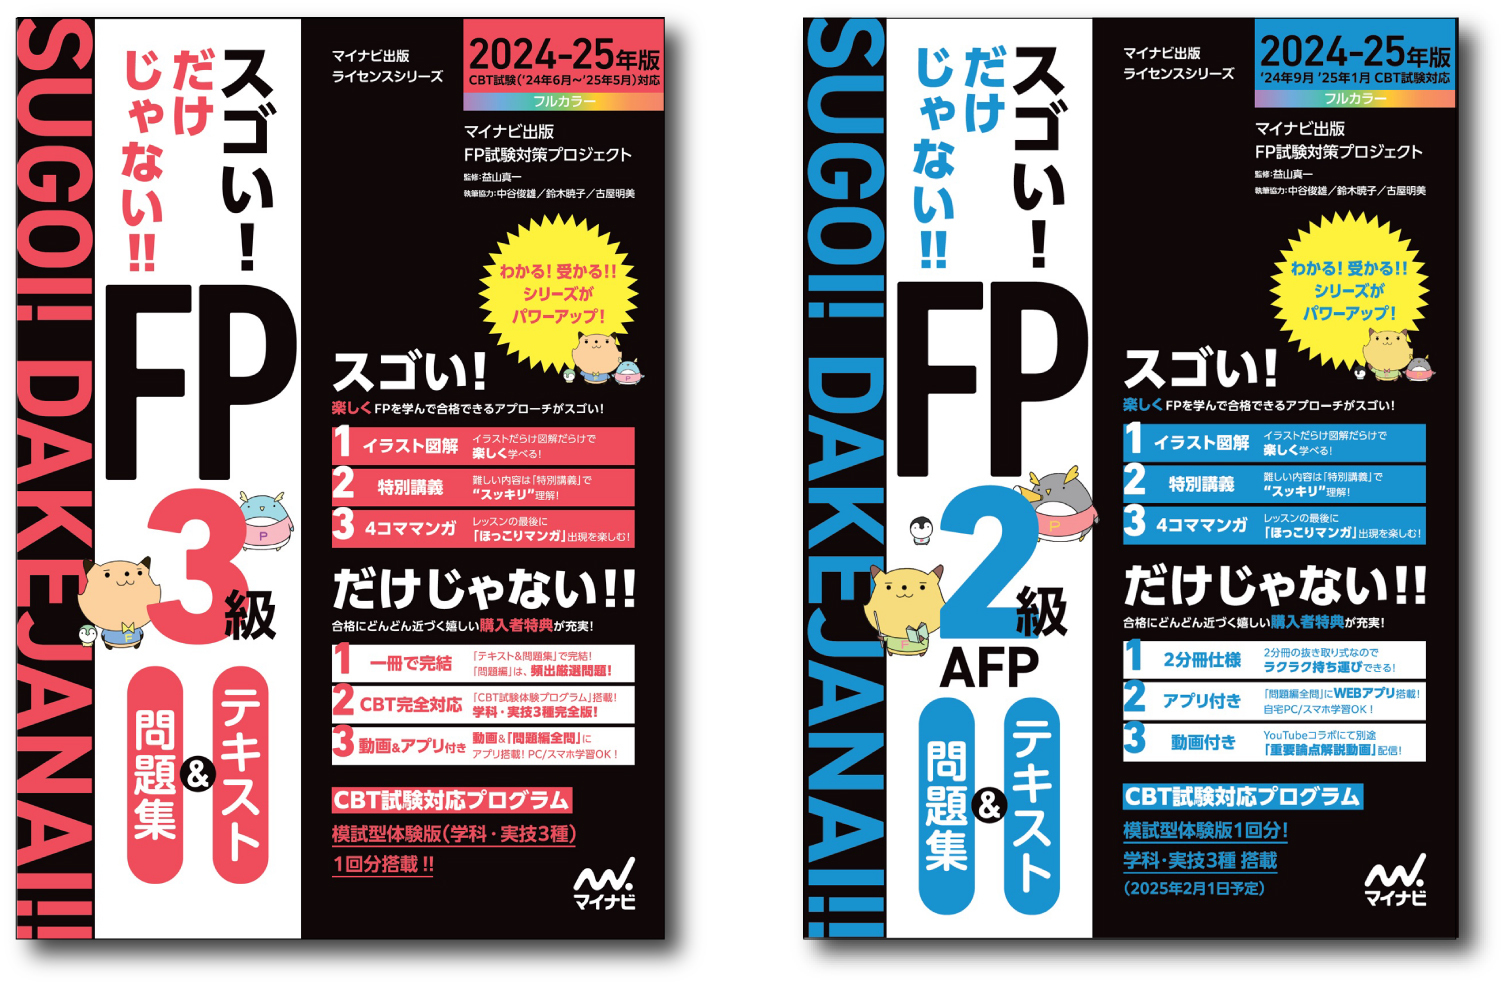 マイナビ出版ライセンスシリーズ
「スゴい! だけじゃない!!FP」の2024-25年度版が発売！